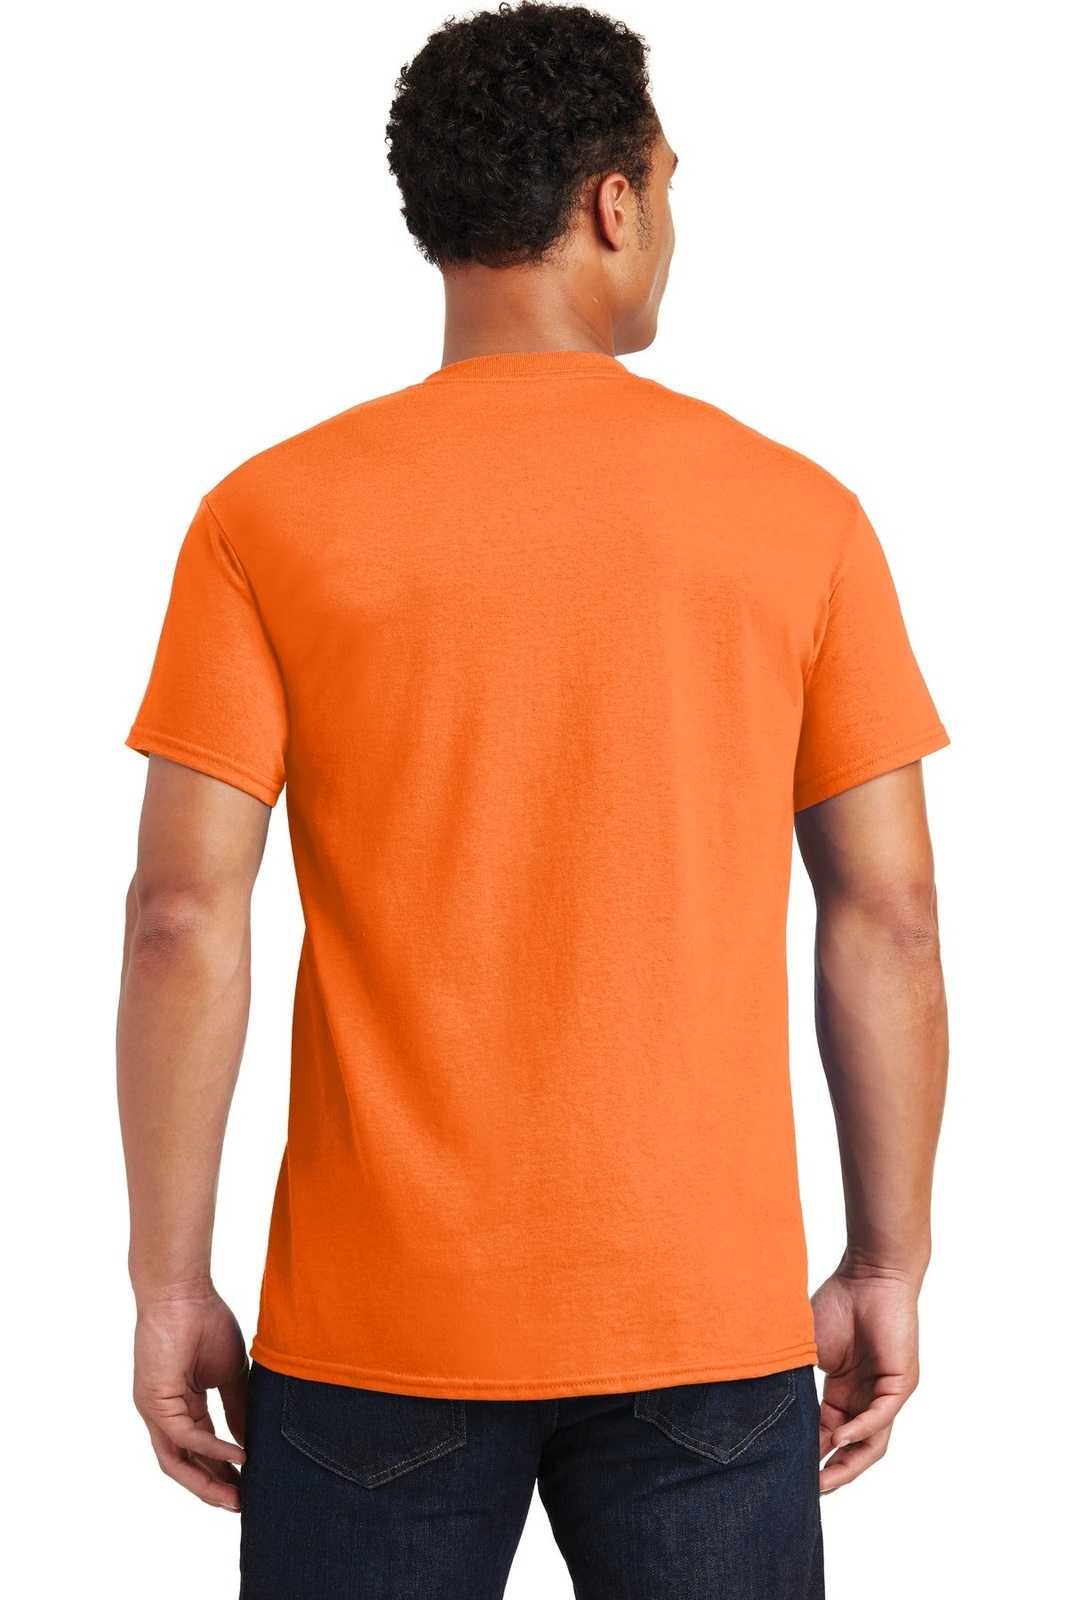 Gildan 2000 Ultra Cotton 100% Cotton T-Shirt - S. Orange - HIT a Double